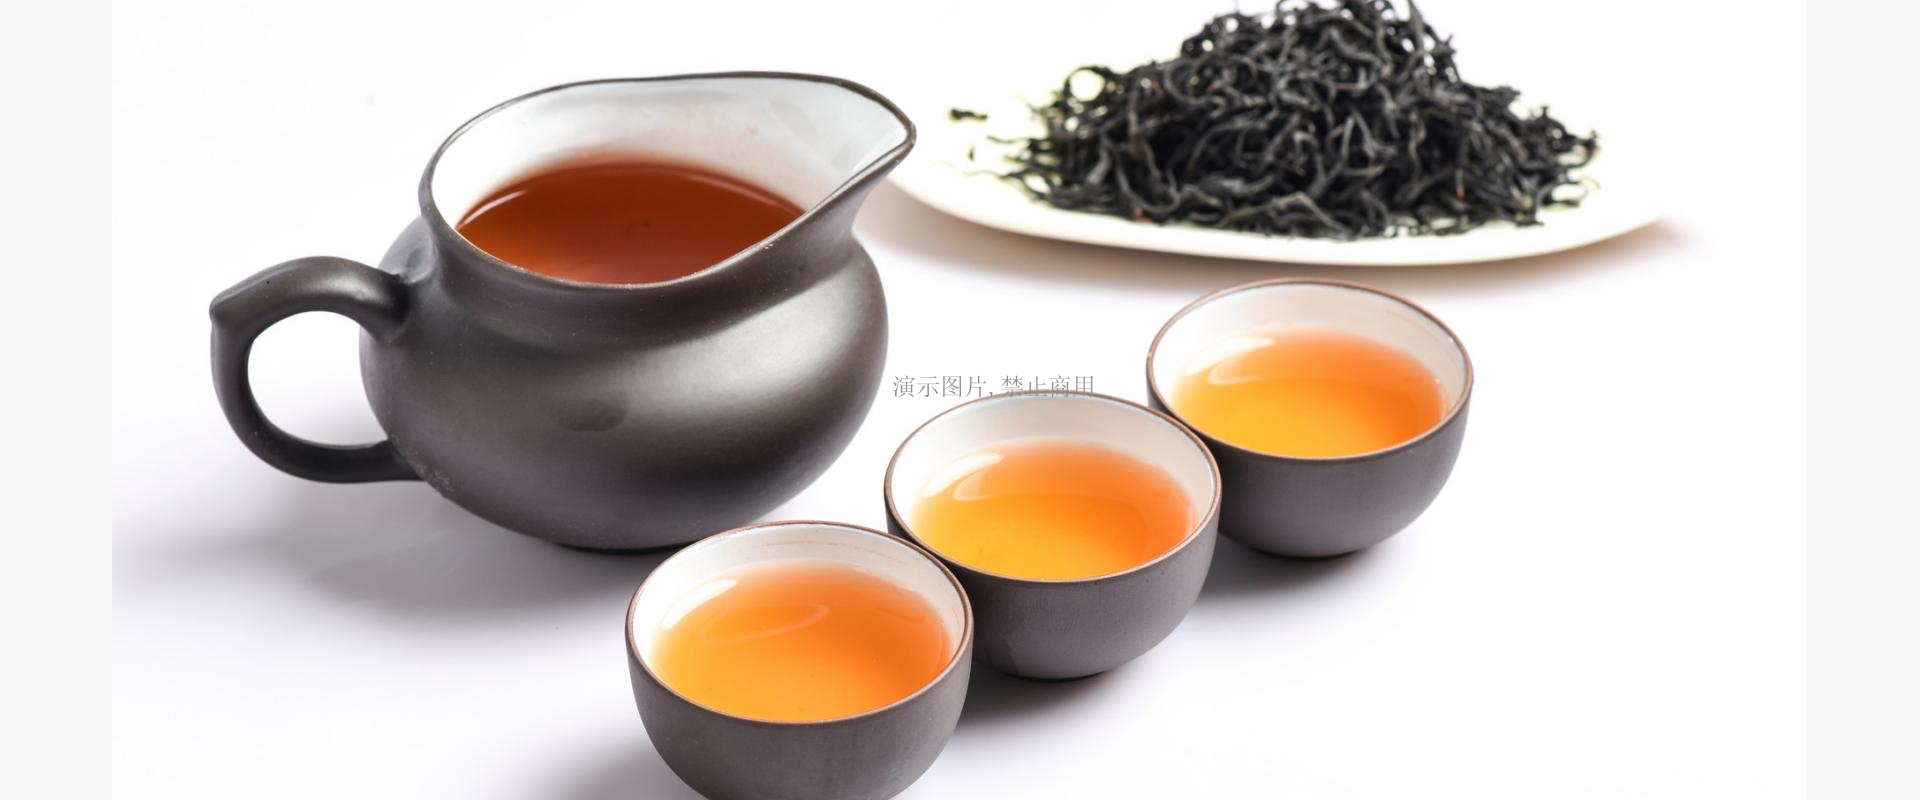 茶文化，是茶与文化的有机融合